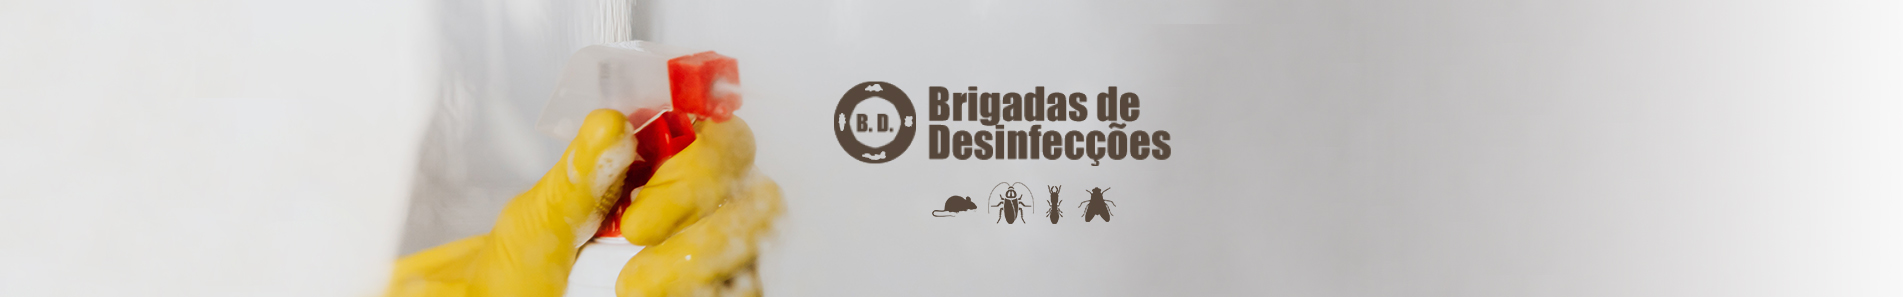 Brigadas de Desinfecções